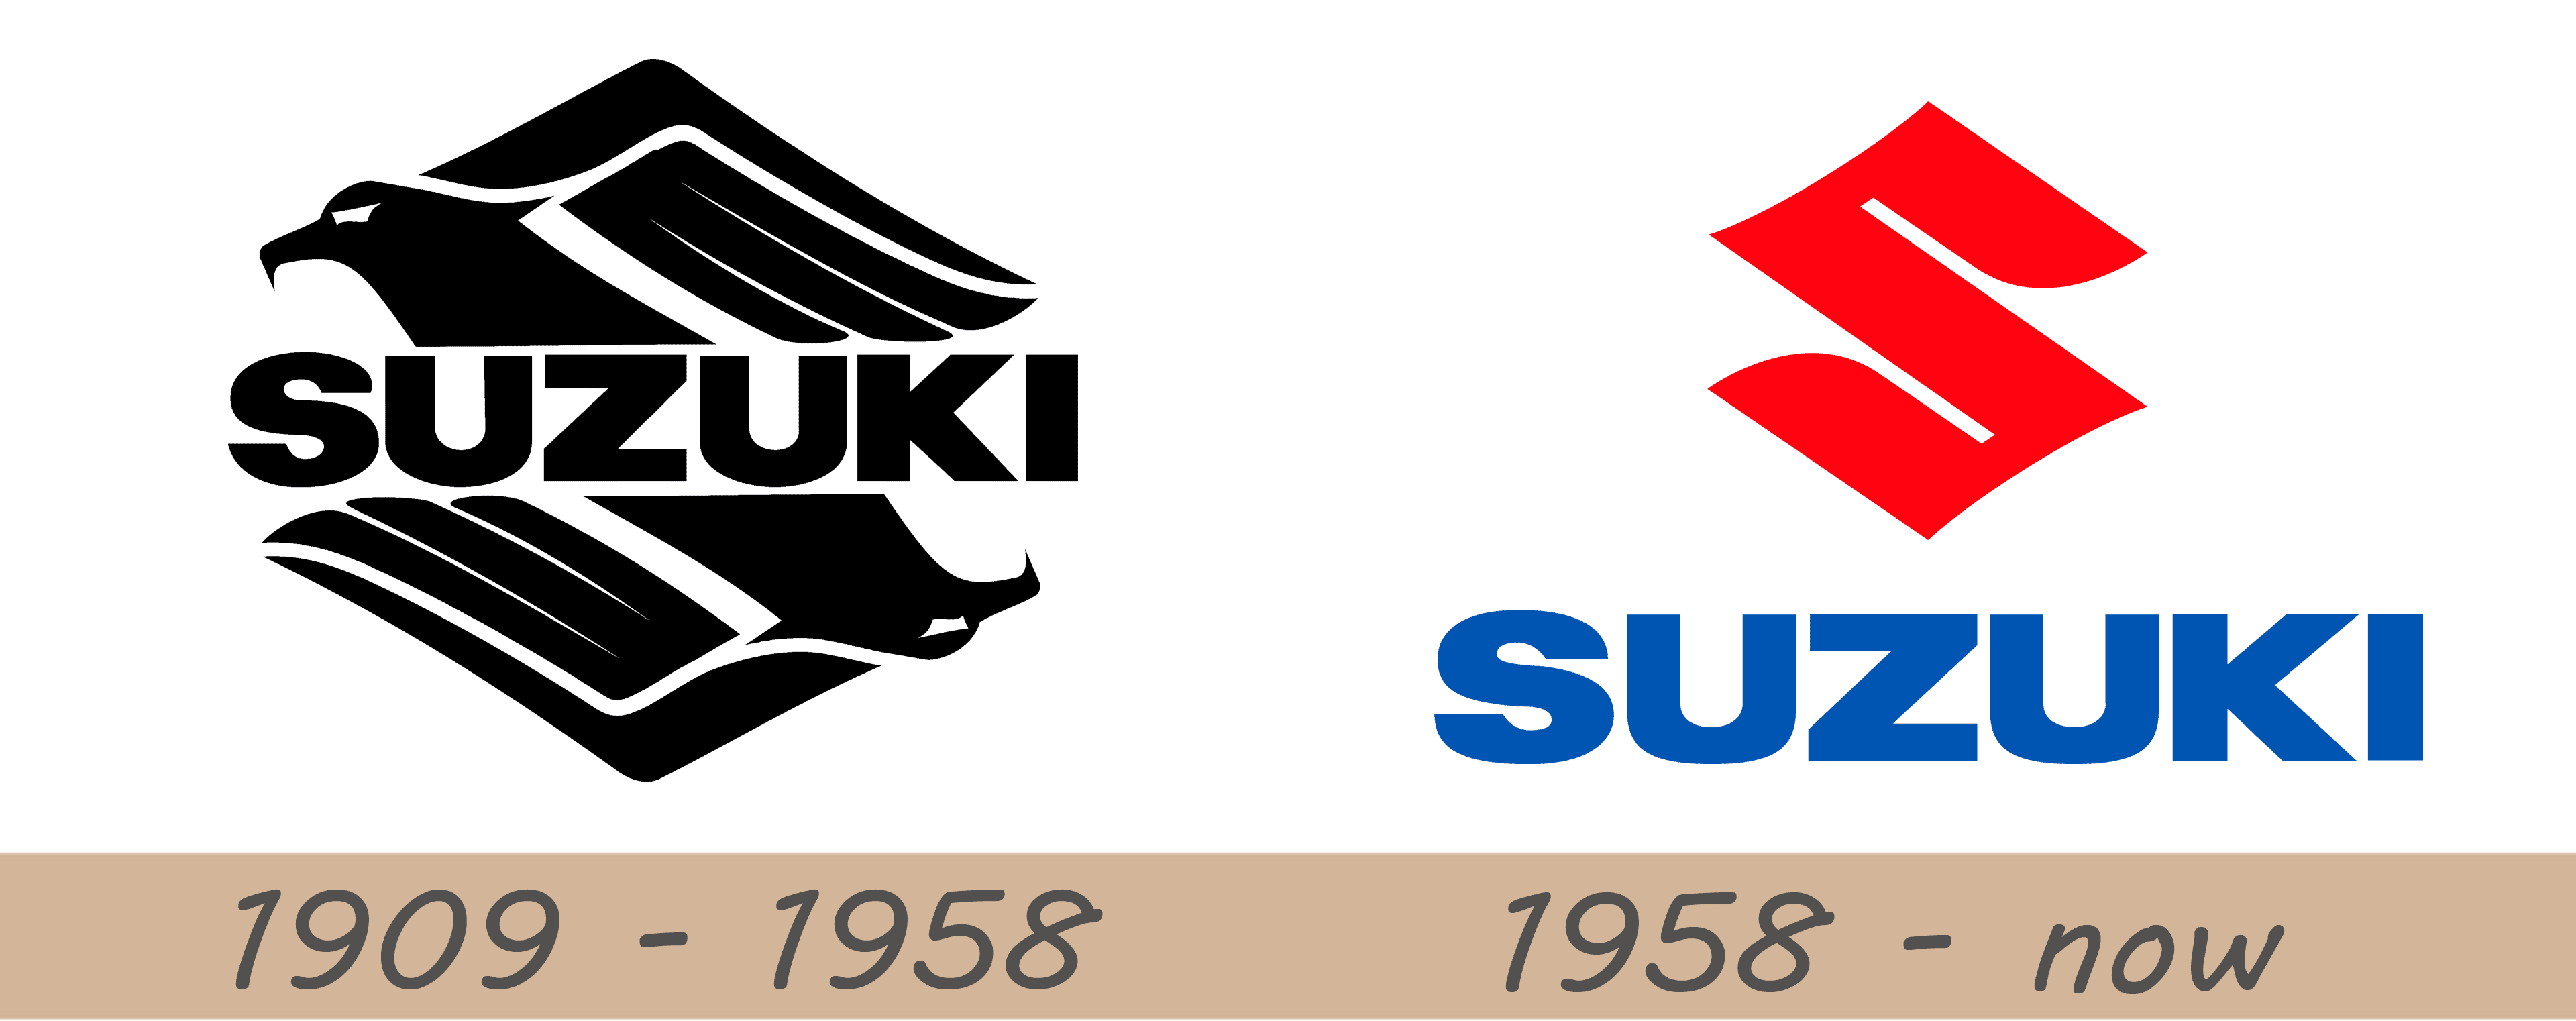 suzuki logo png